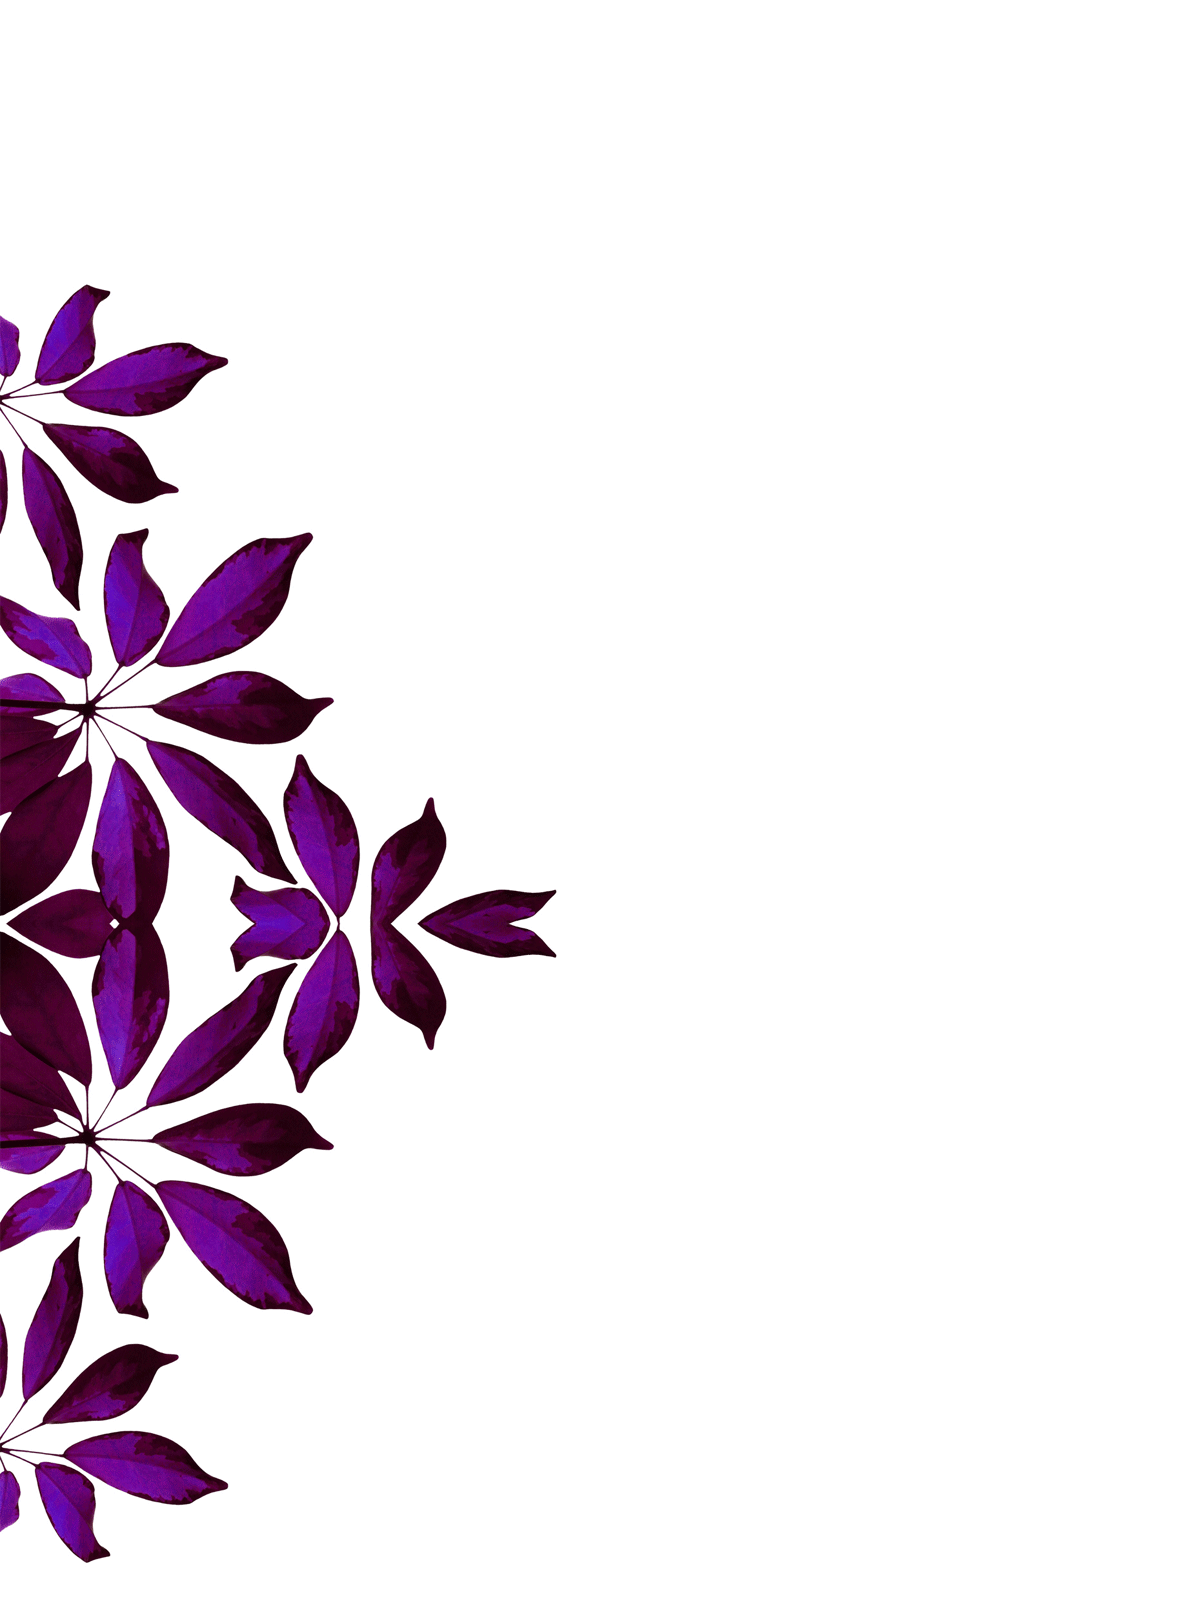 Gothic Flower Border Design - ClipArt Best